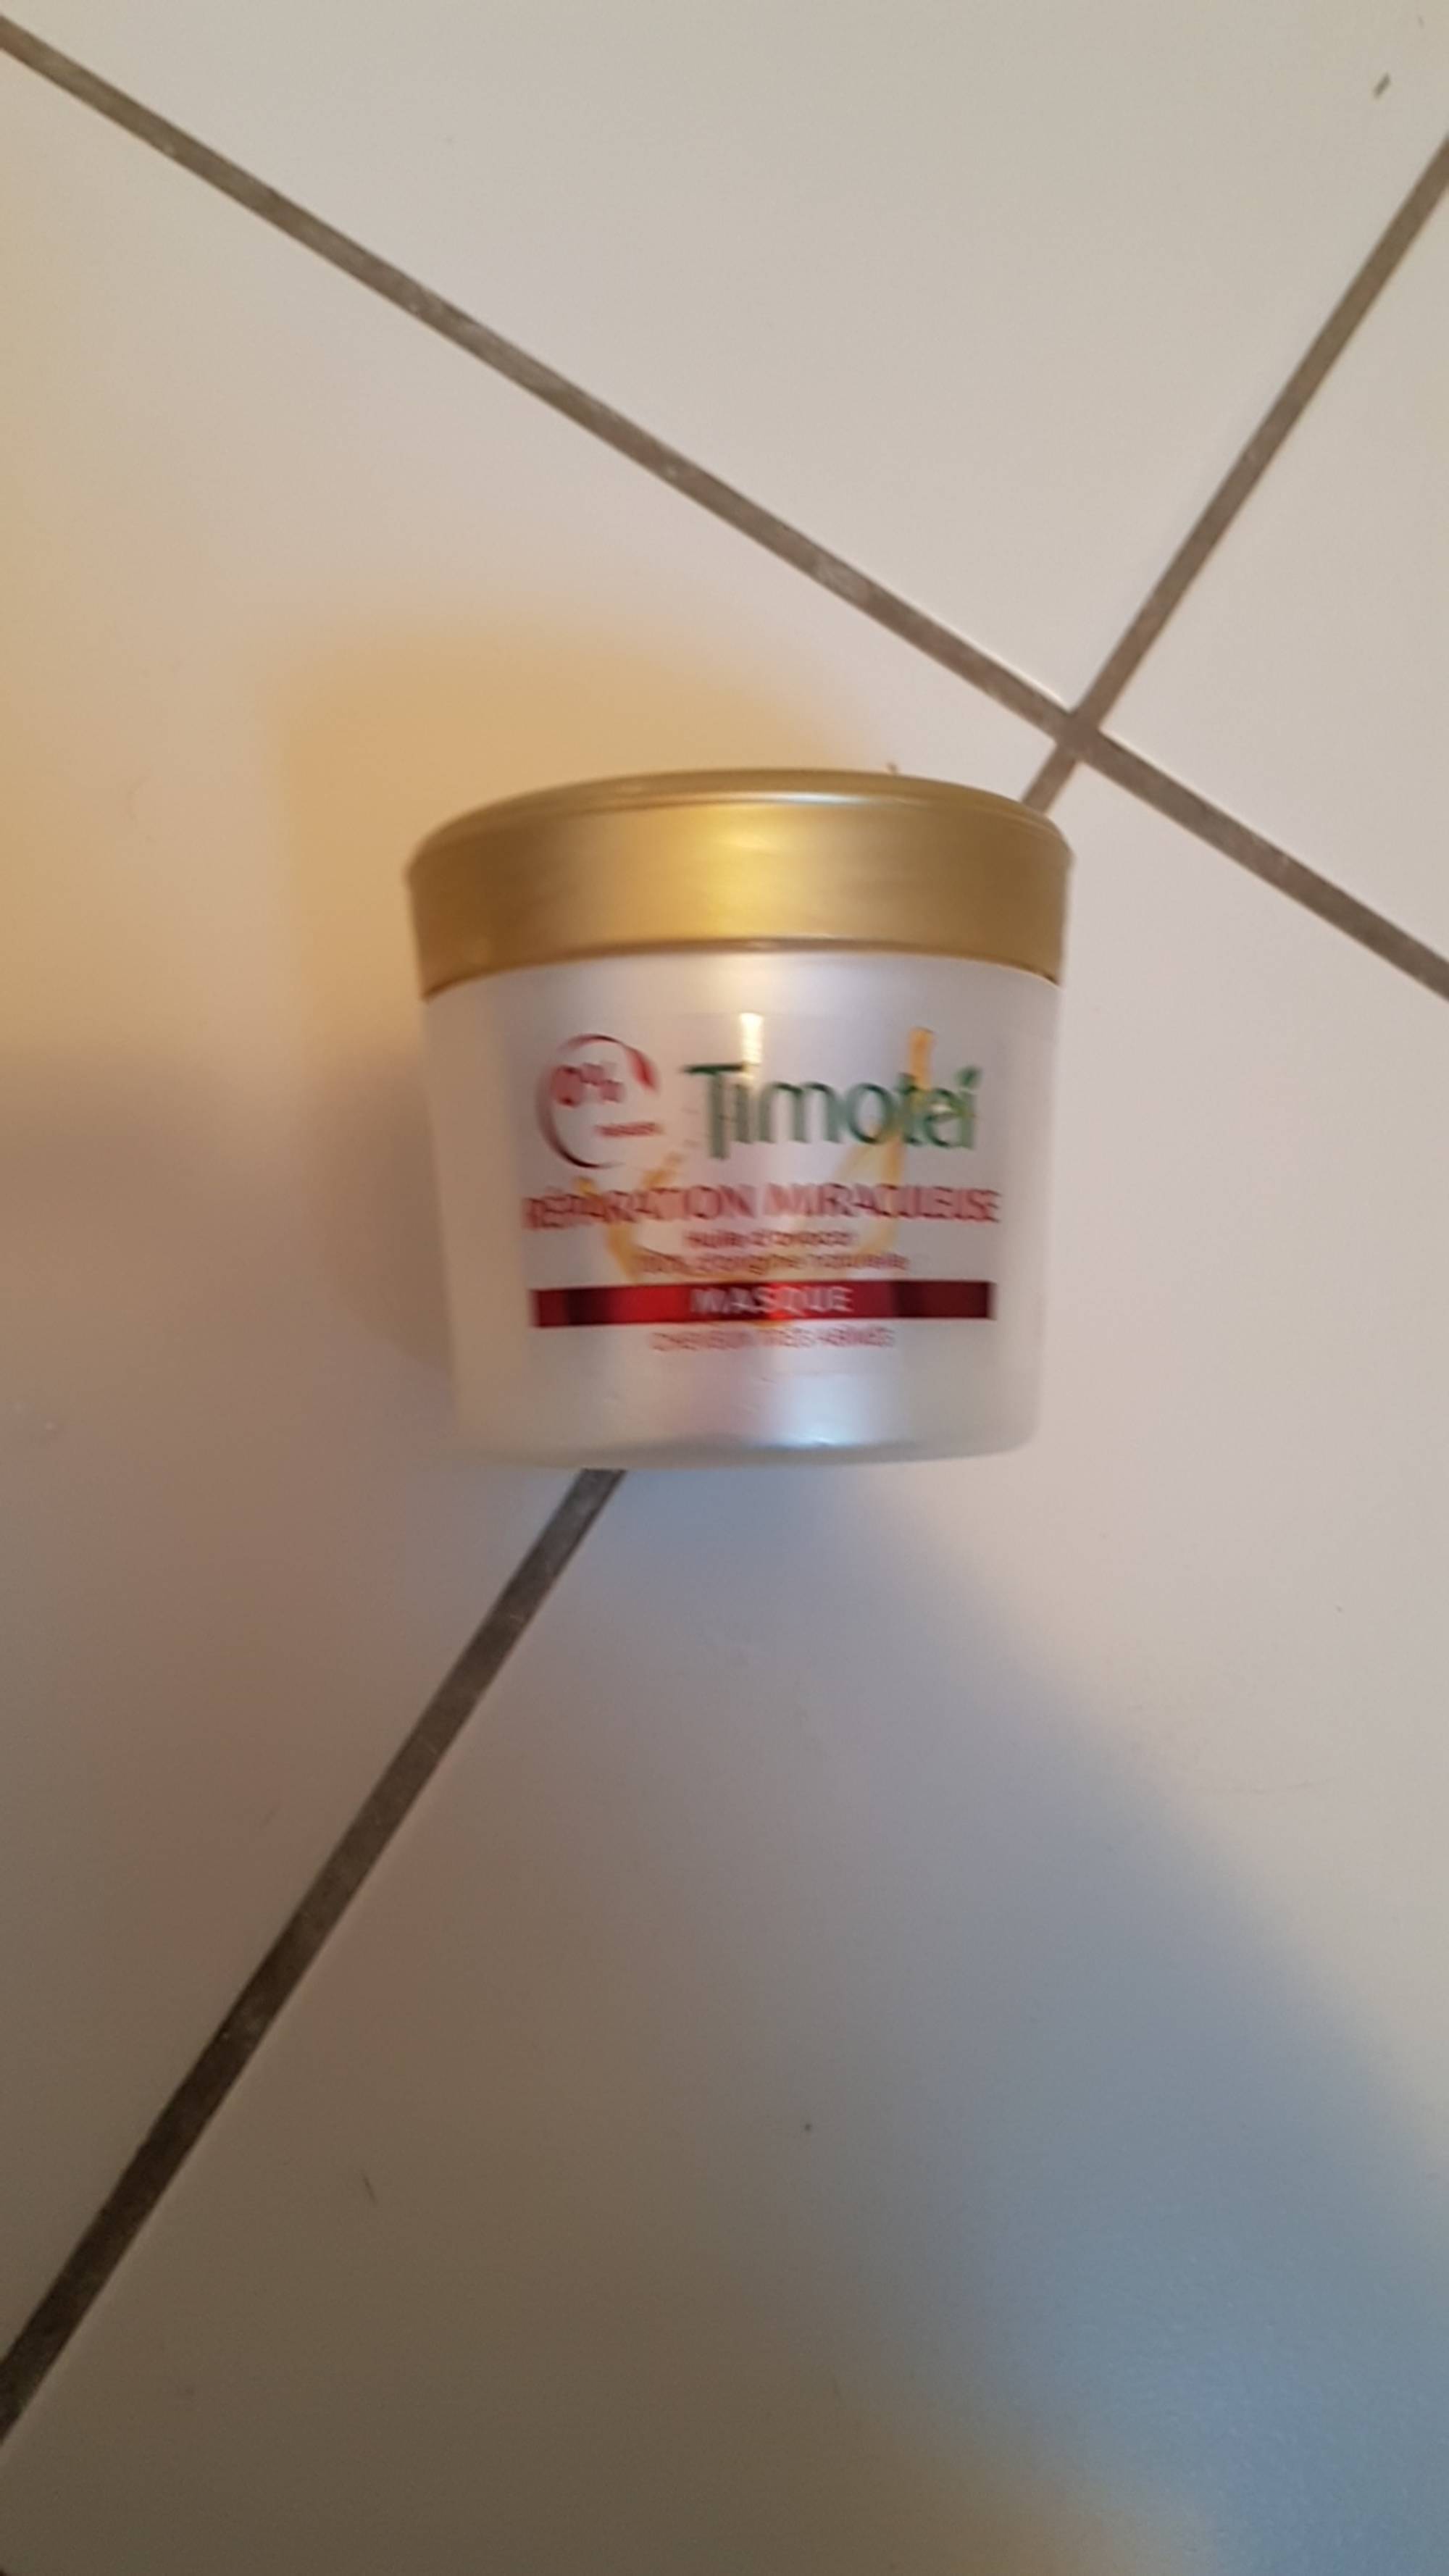 TIMOTEI - Réparation miraculeuse - Masque cheveux très abîmés